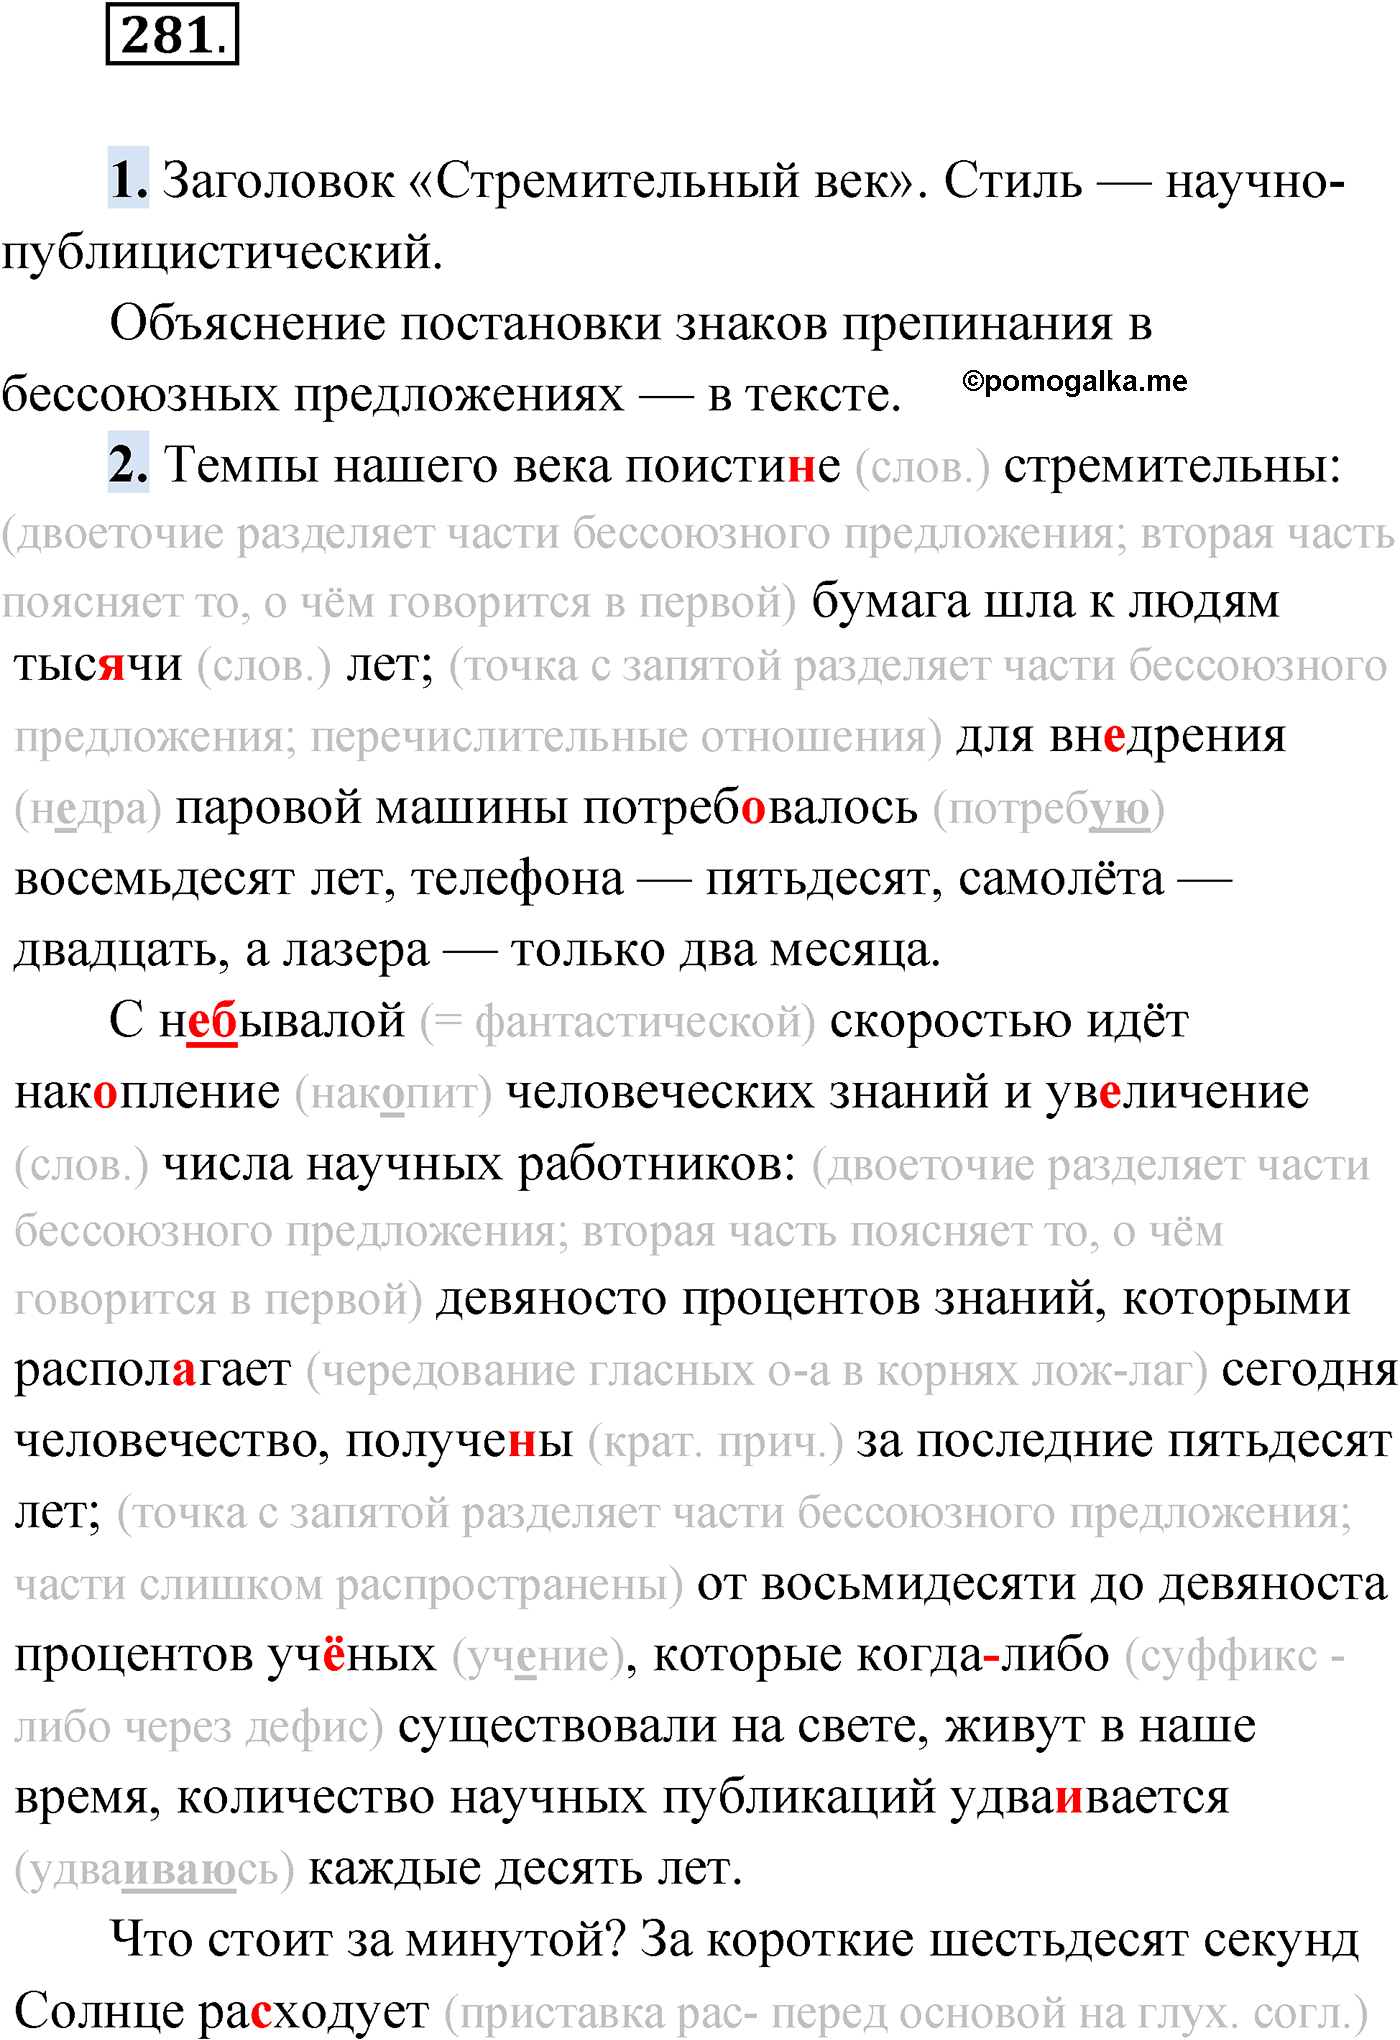 упражнение №281 русский язык 9 класс Мурина 2019 год